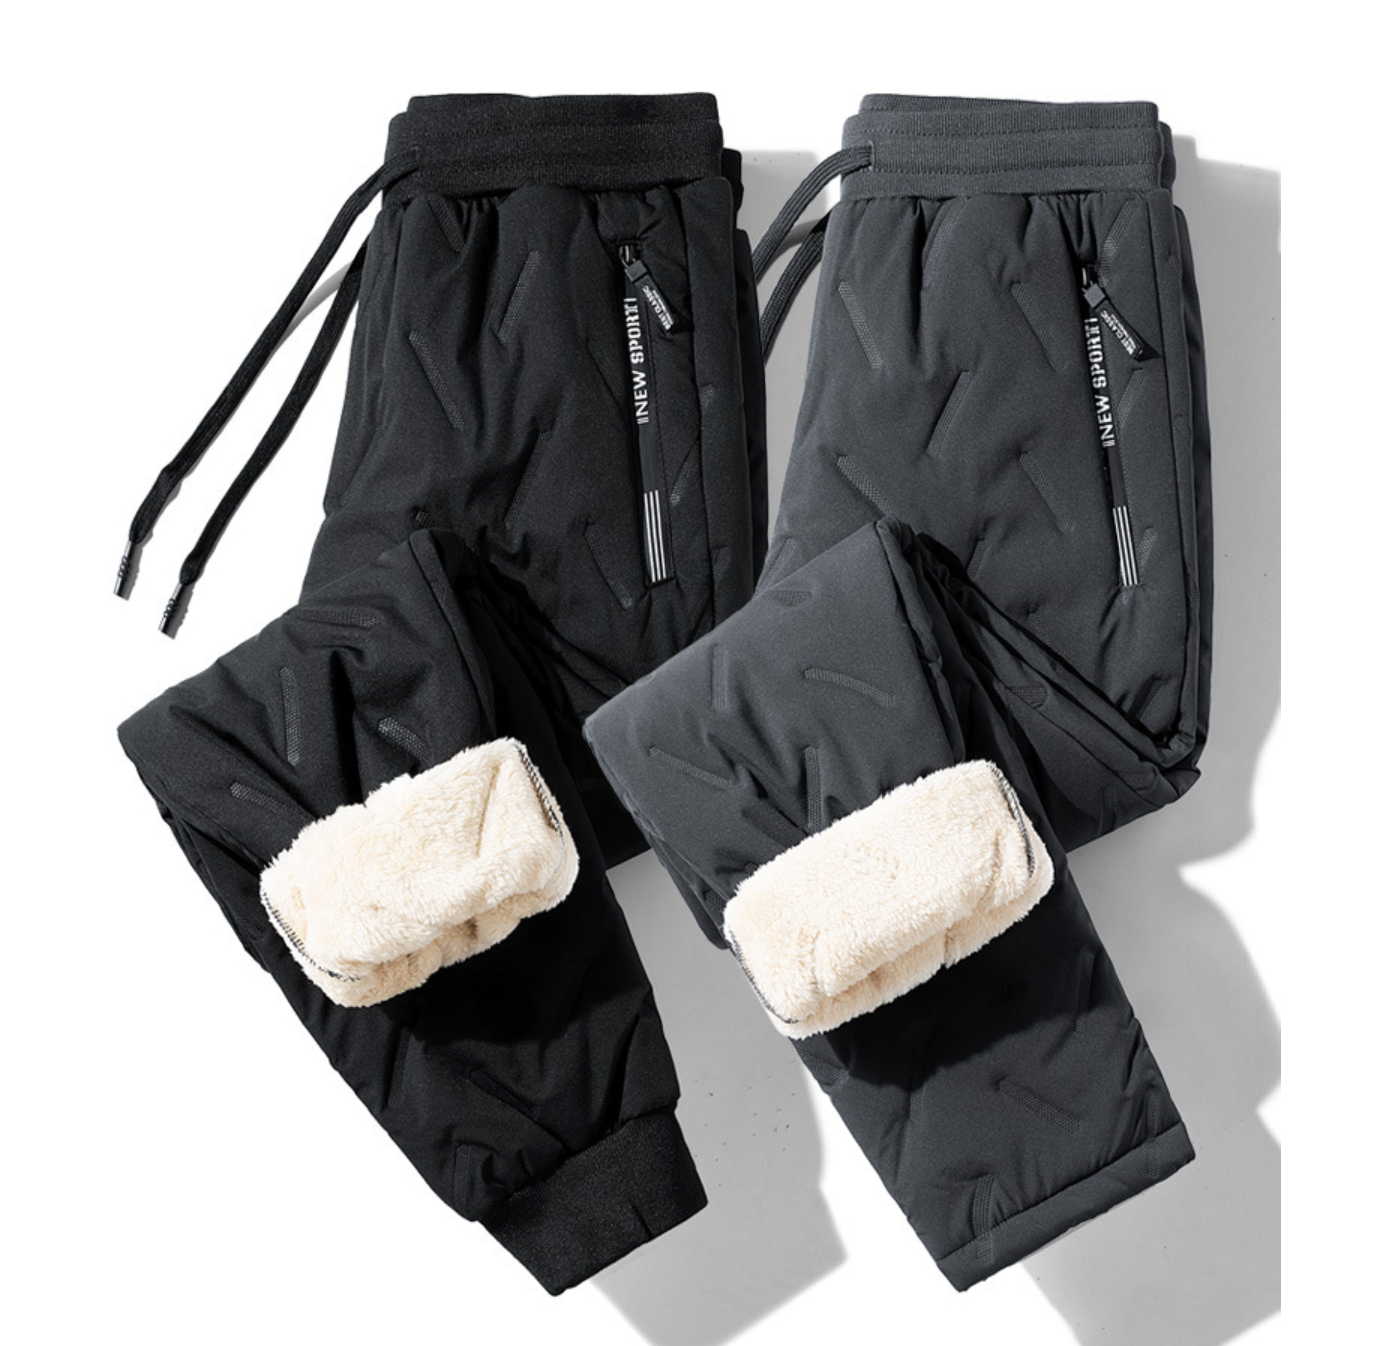 Vyriškos sportinės kelnės su pašiltinimu - Originalu-pigu